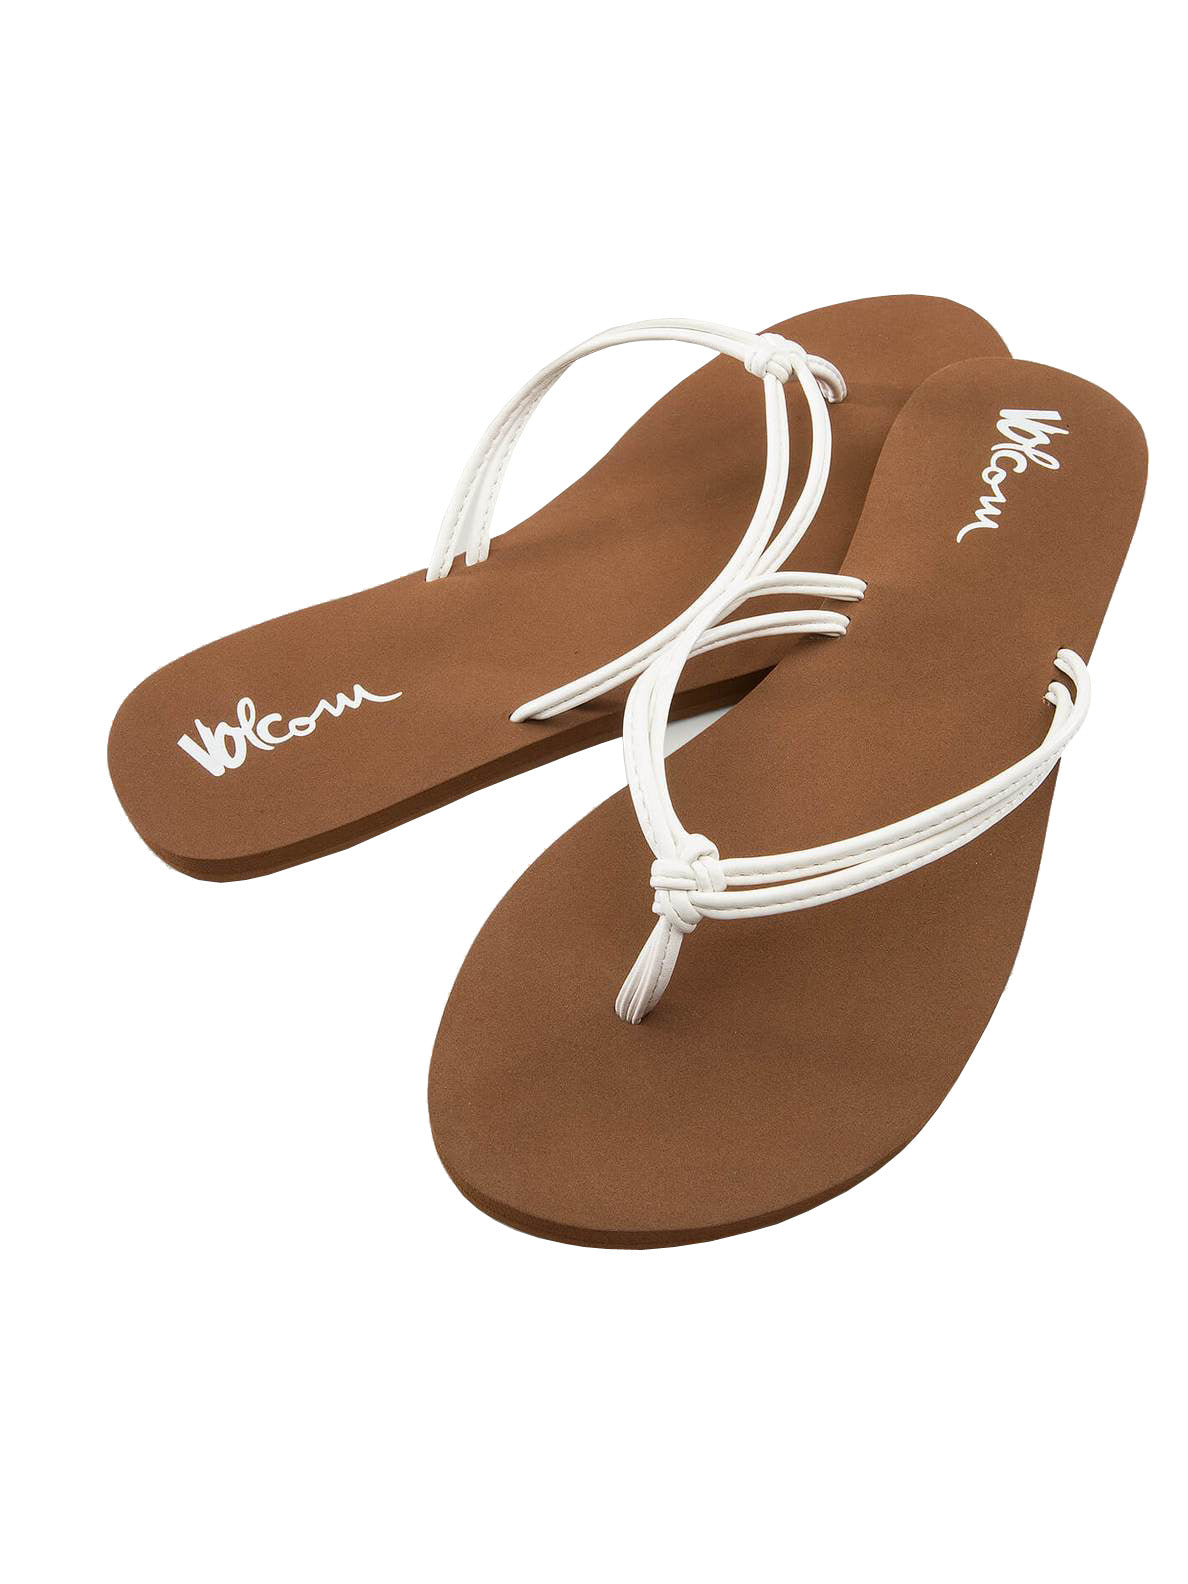 Volcom Forever and Ever 2 Womens Sandal WHT-White 8